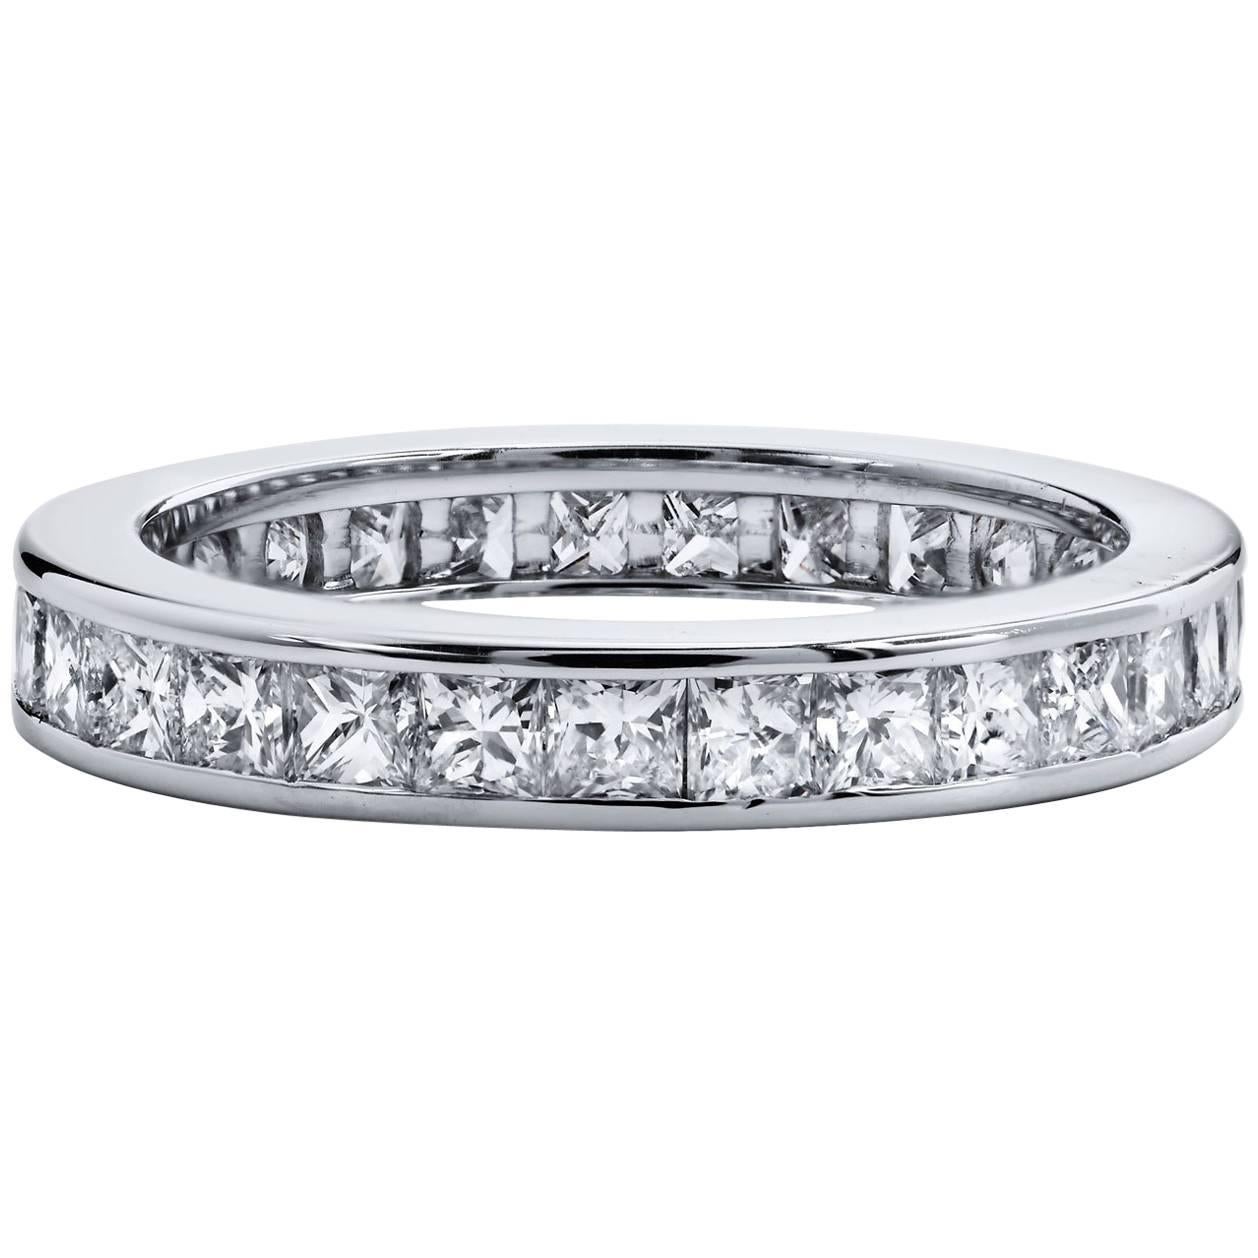 3.00 Carat Princess Cut Diamond Band Ring 